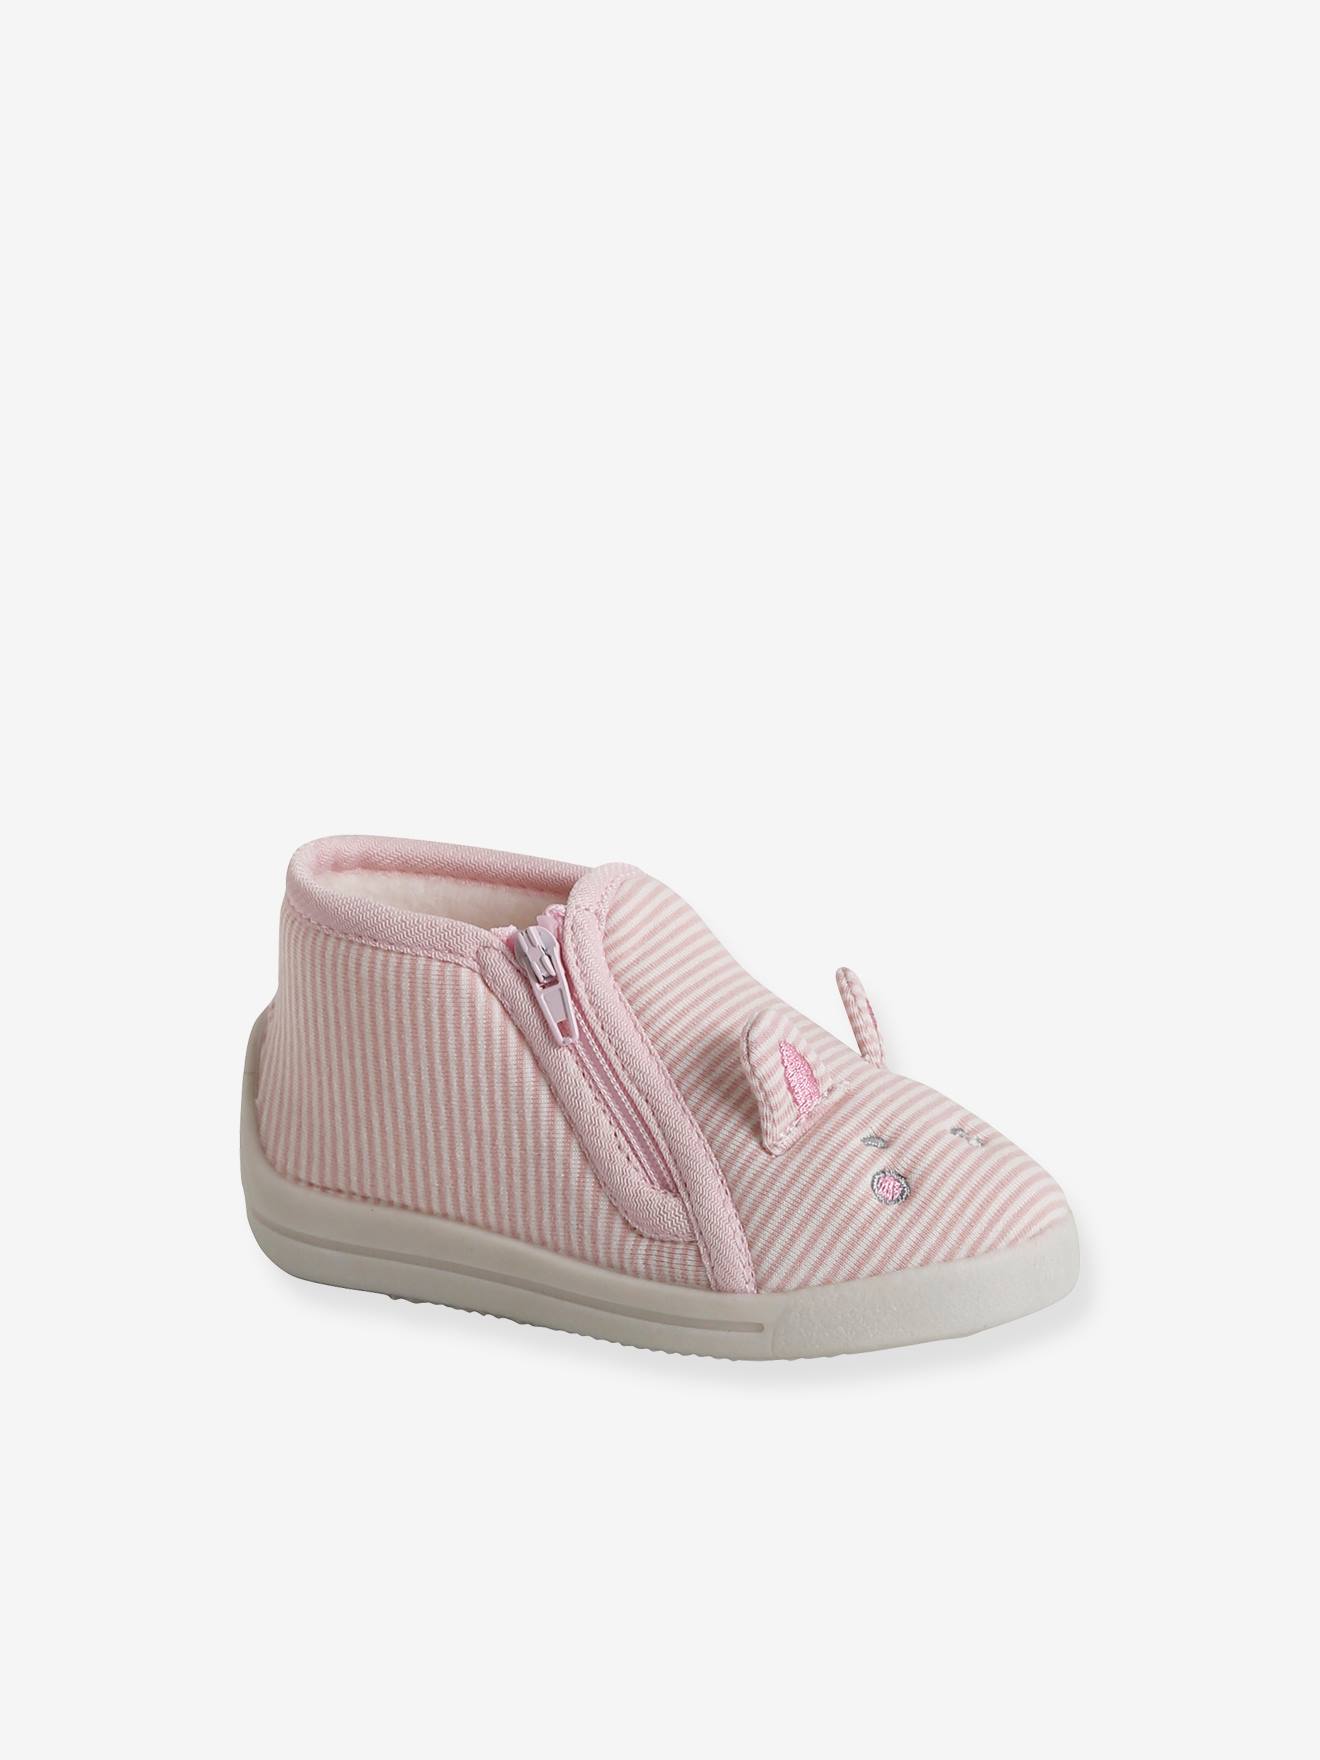 Chaussons zippés bébé en toile rayé rose